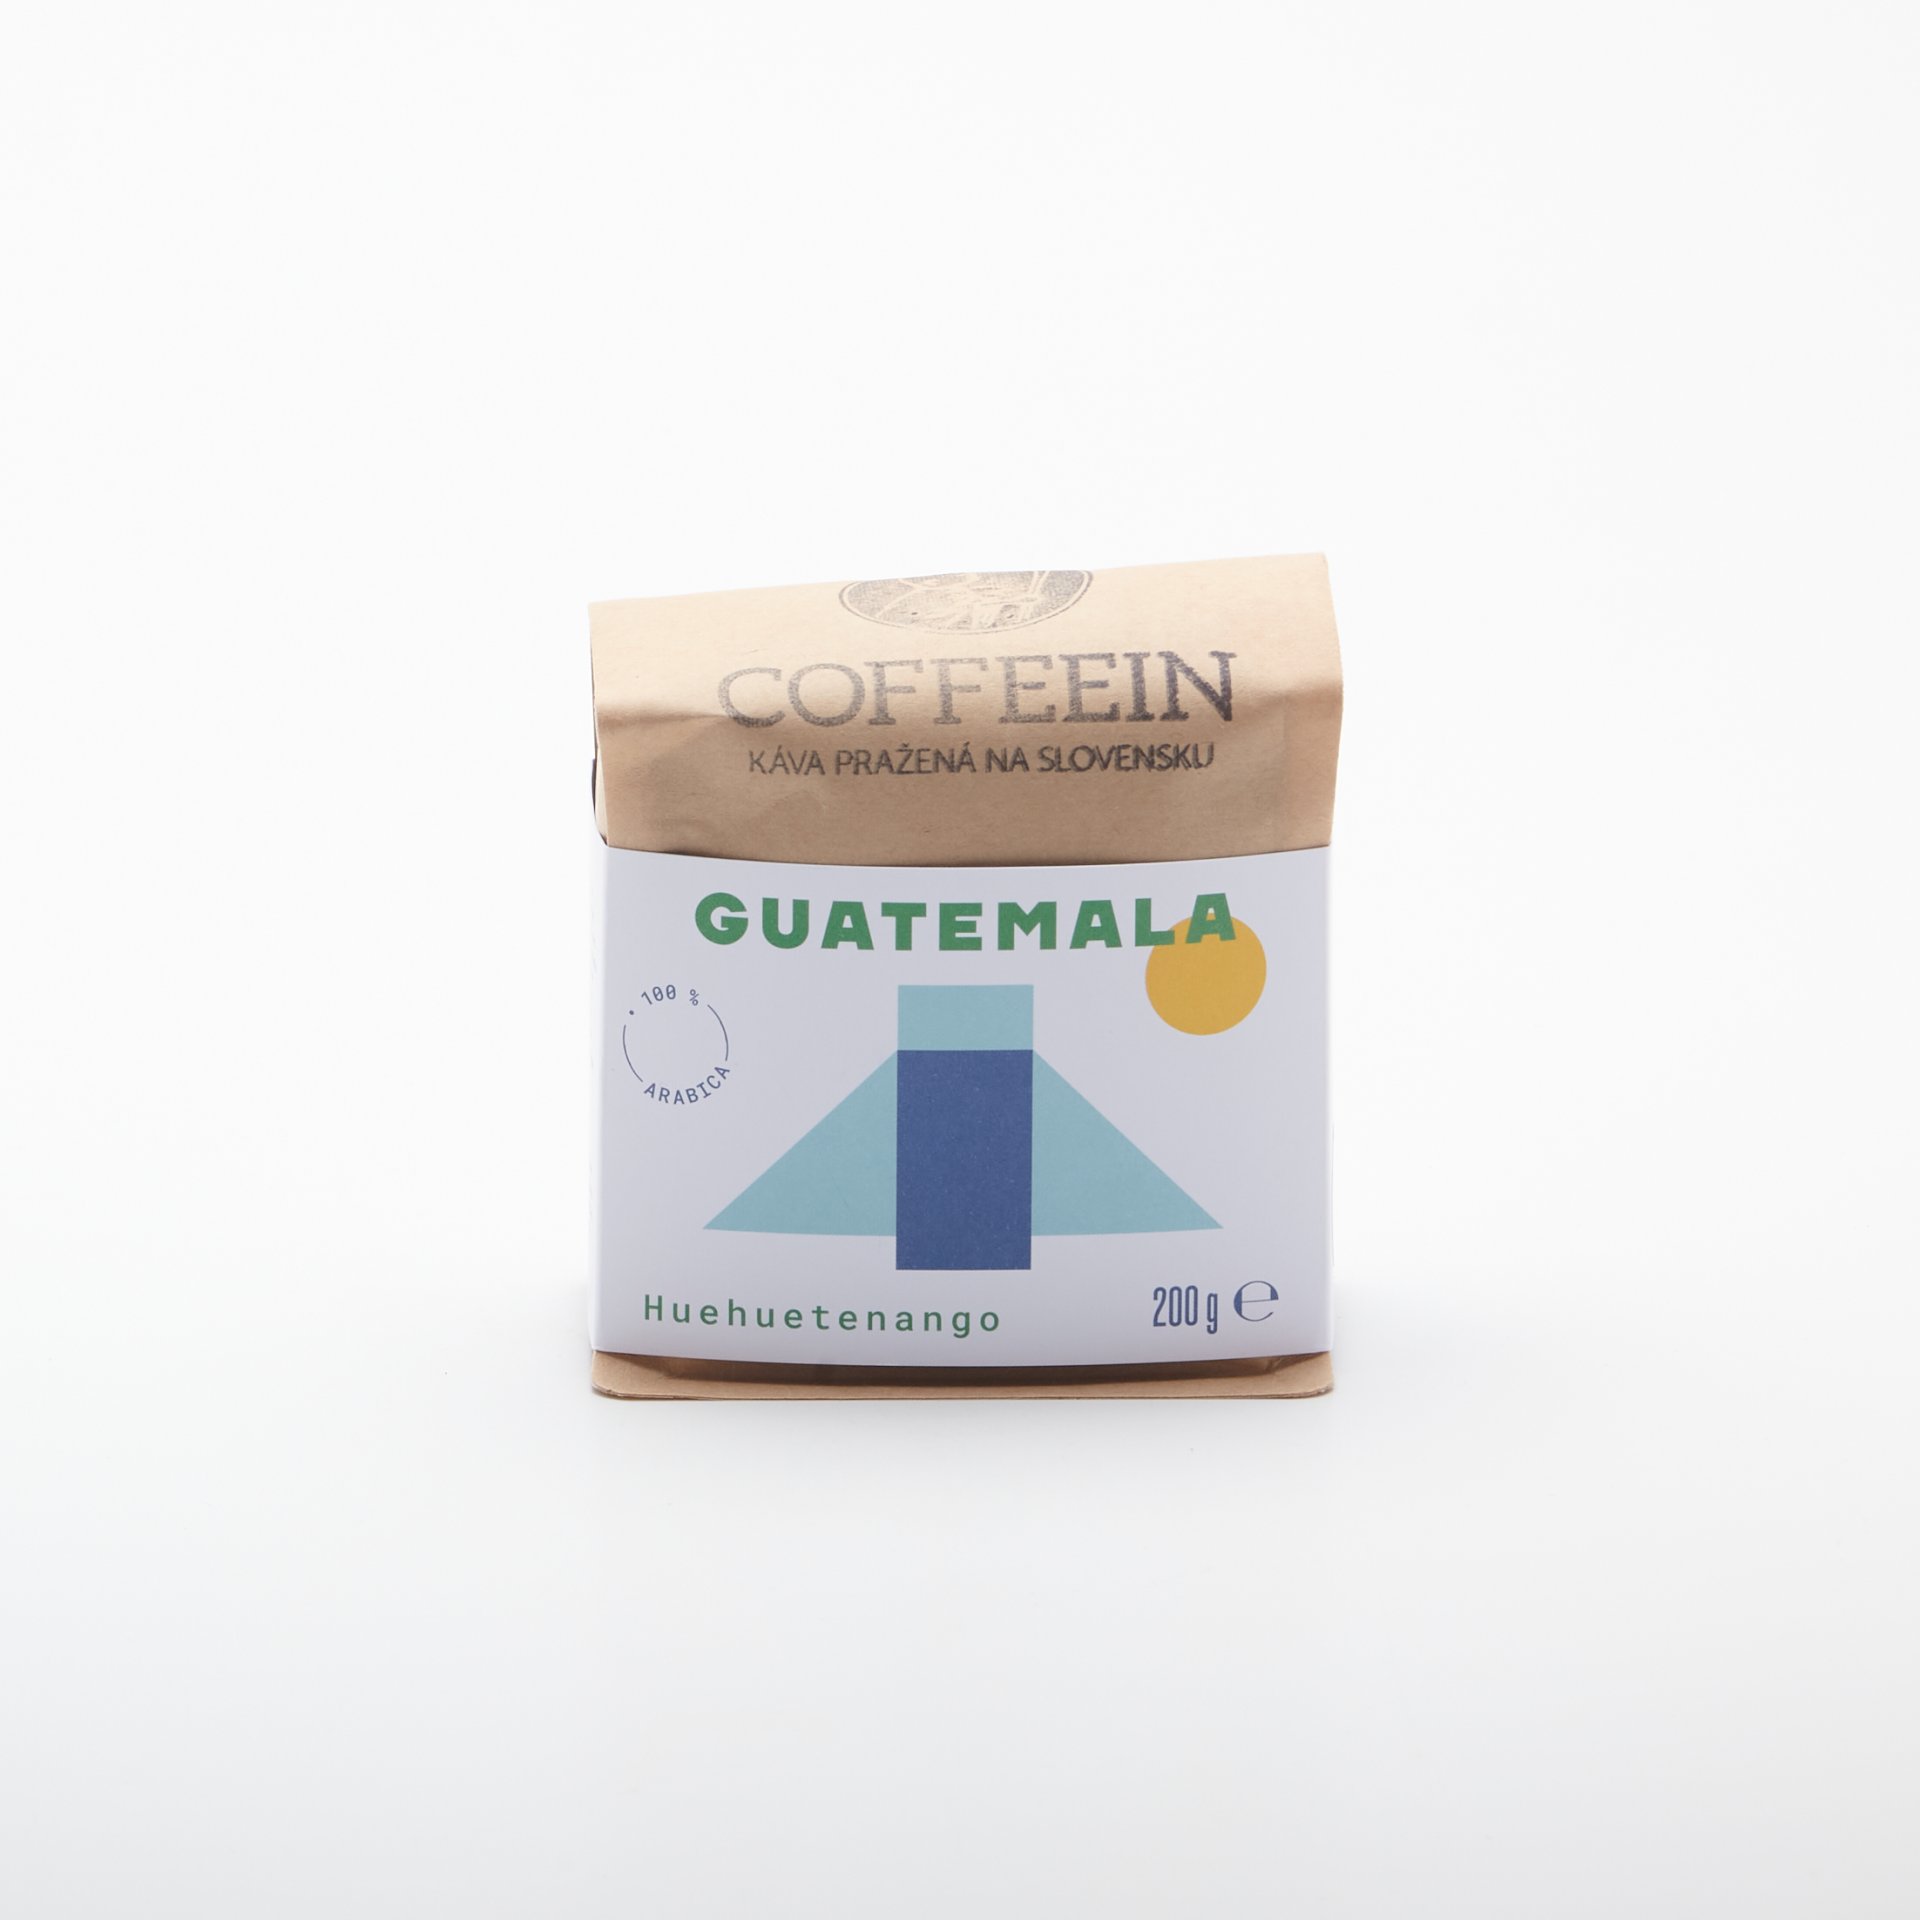 Coffeein Guatemala Huehuetenango 200g